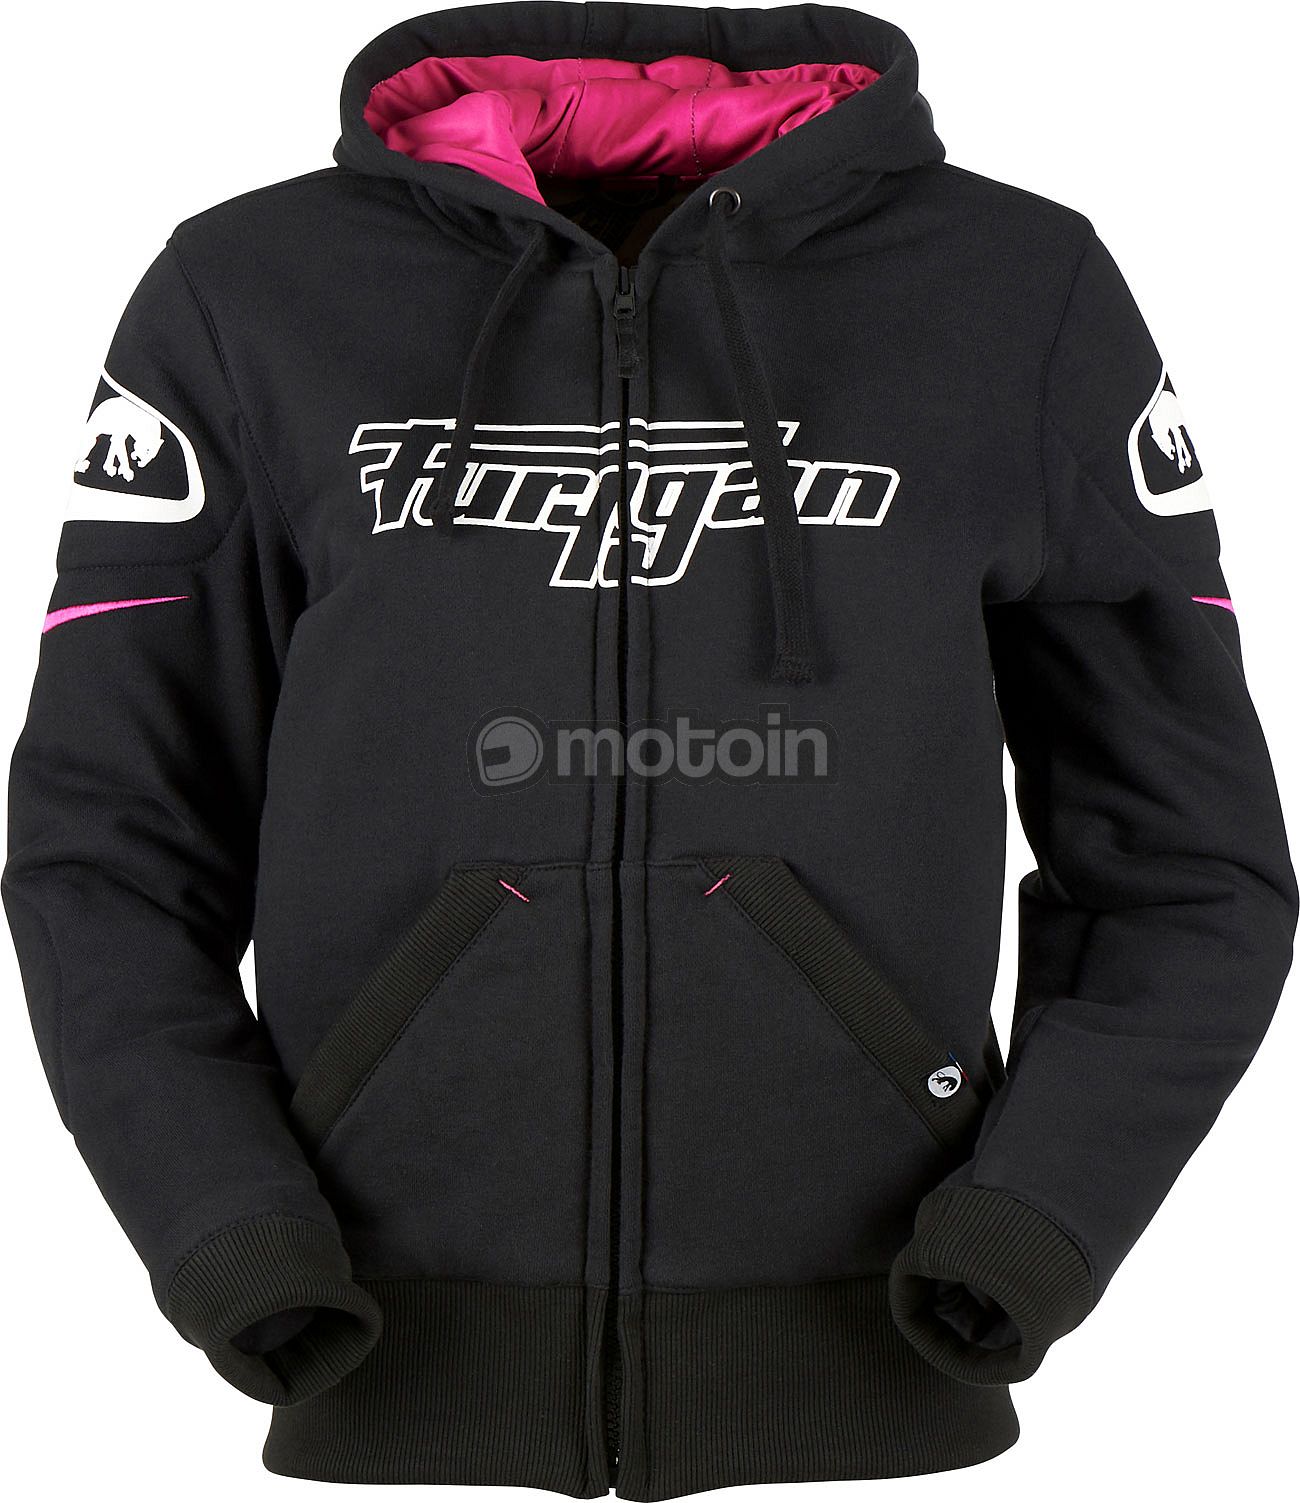 Furygan zip hoodie - motoin.de